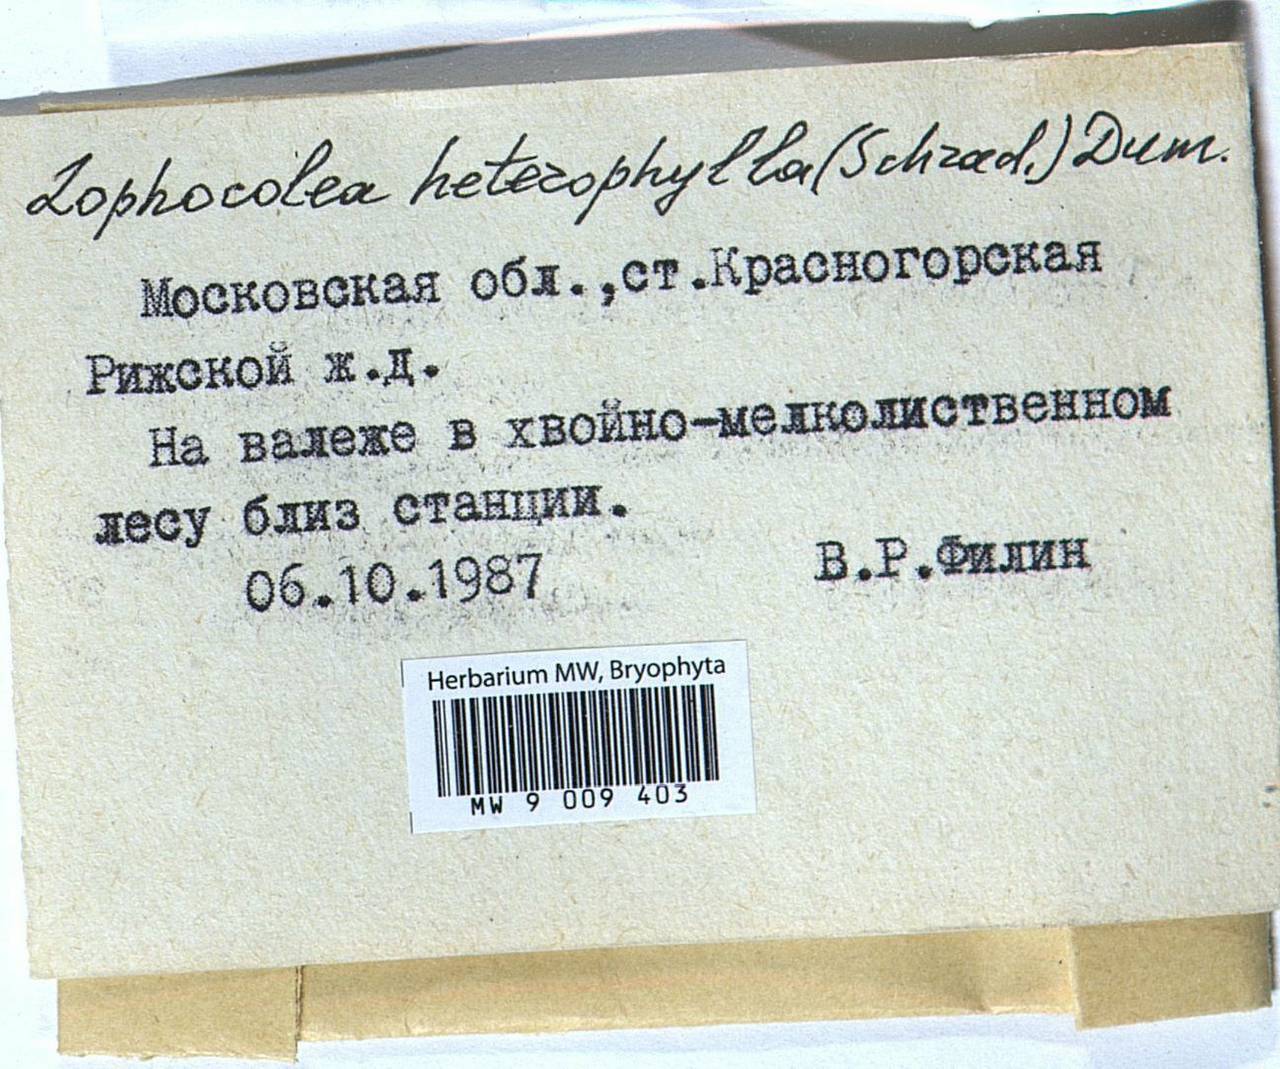 Lophocolea heterophylla (Schrad.) Dumort., Гербарий мохообразных, Мхи - Москва и Московская область (B6a) (Россия)